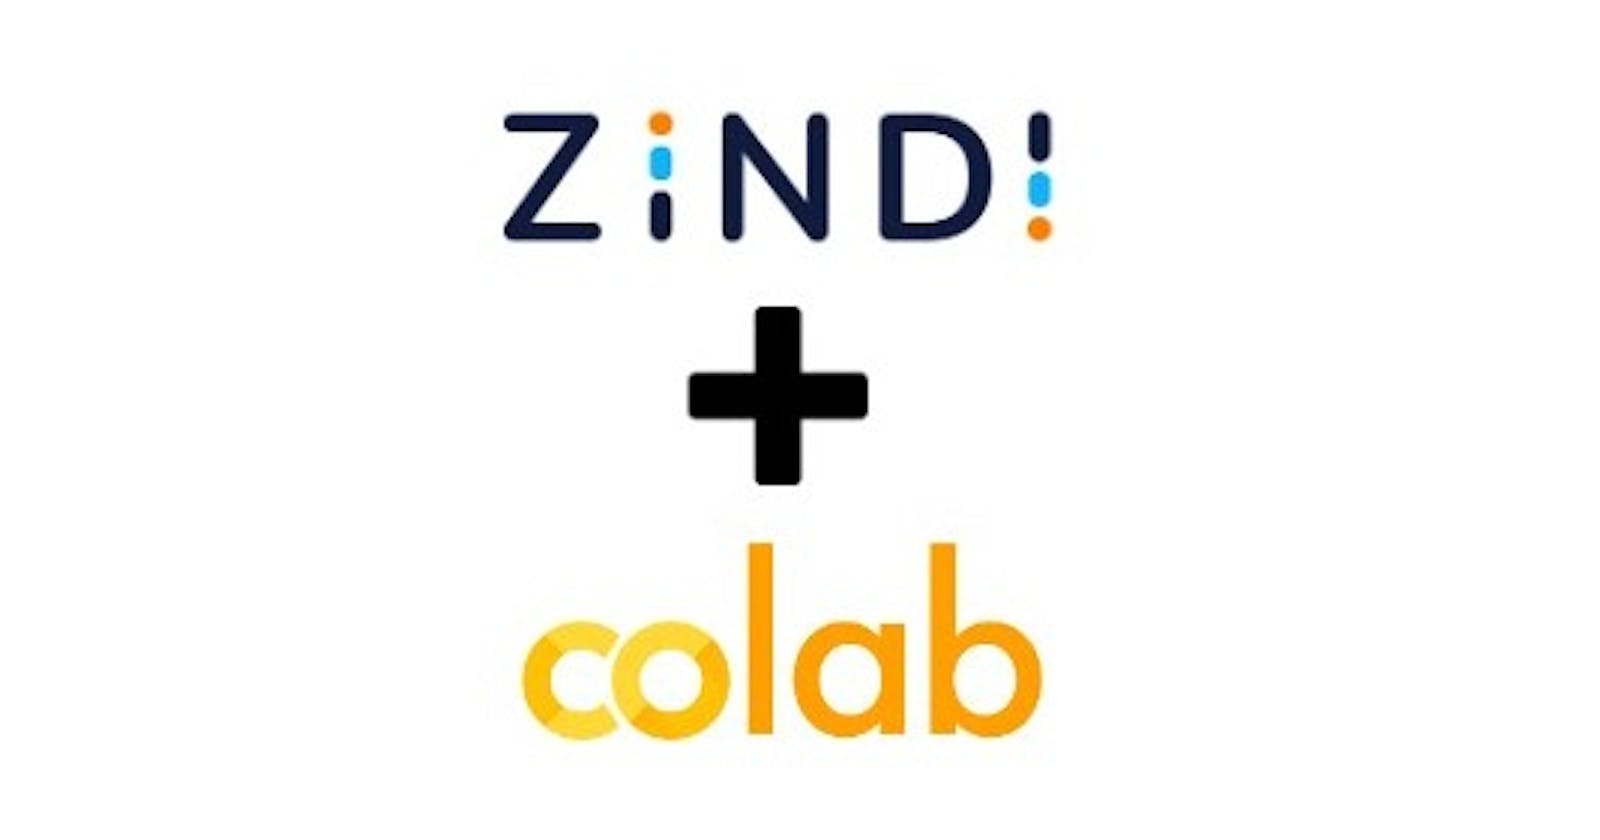 Using Zindi data on Google Colab